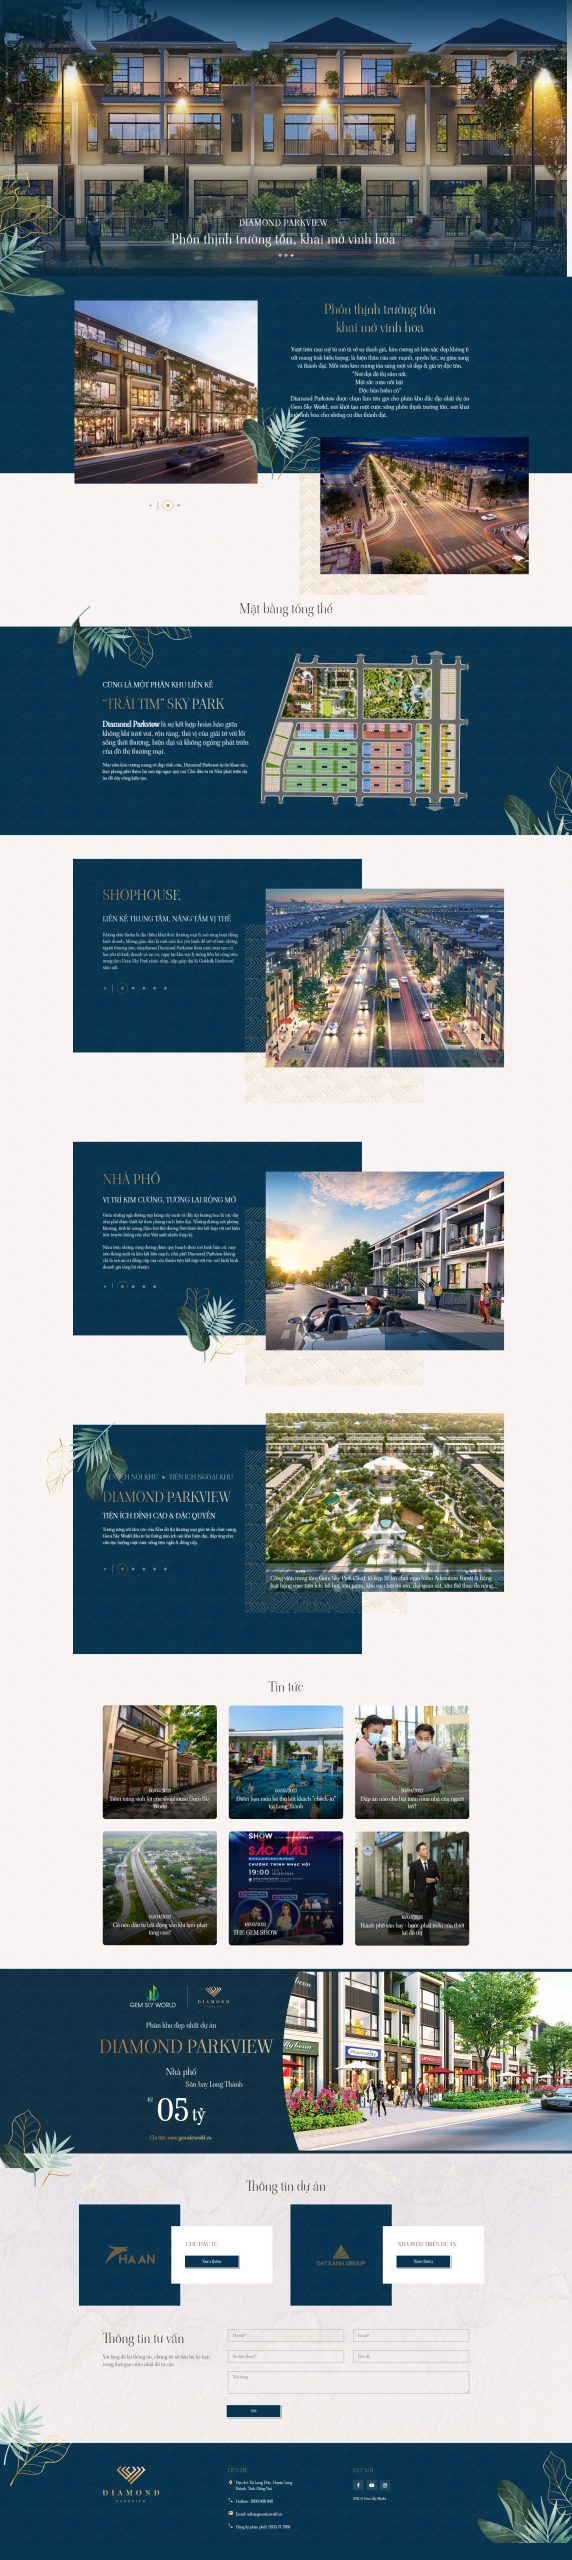 Mẫu website giới thiệu dự án bất động sản CT5